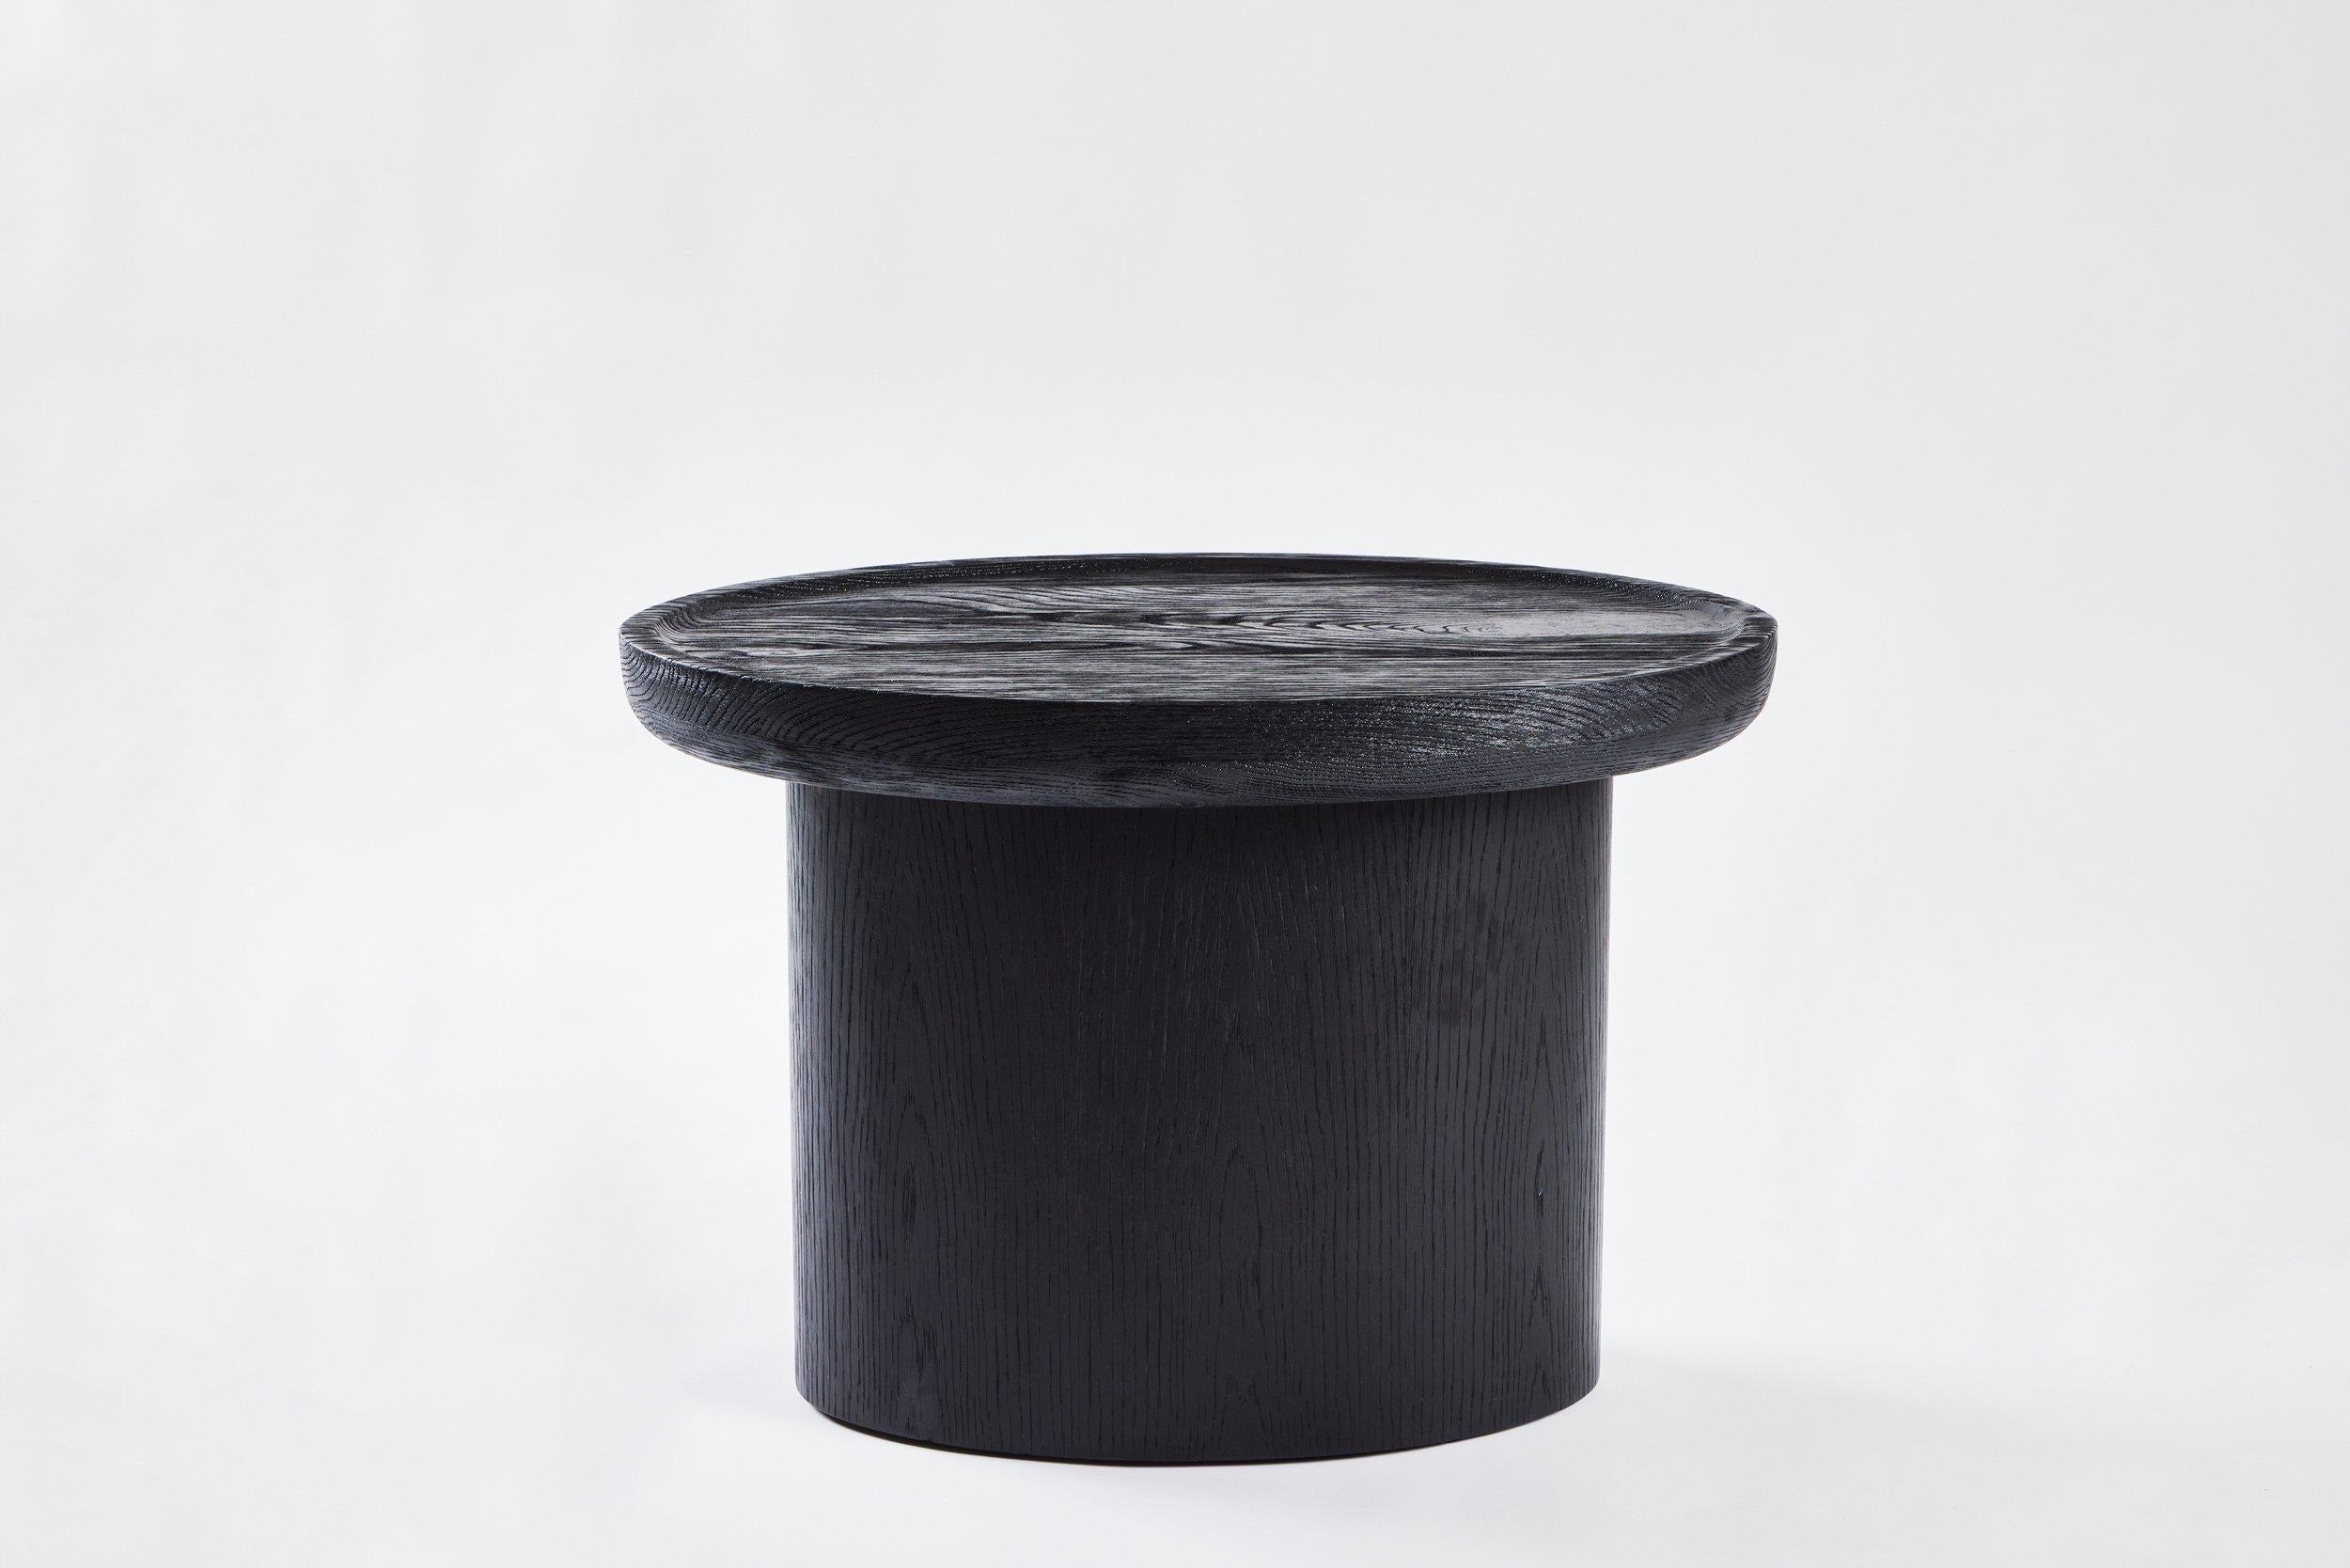 Der Findley Oval Low Side Table von Martin & Brockett zeichnet sich durch die für die Collection'S charakteristische geschnitzte, geschwungene Lippe mit einem ovalen Sockel aus.

H 19 in. x B 28 in. x T 20 in.

Auf Bestellung in weiteren